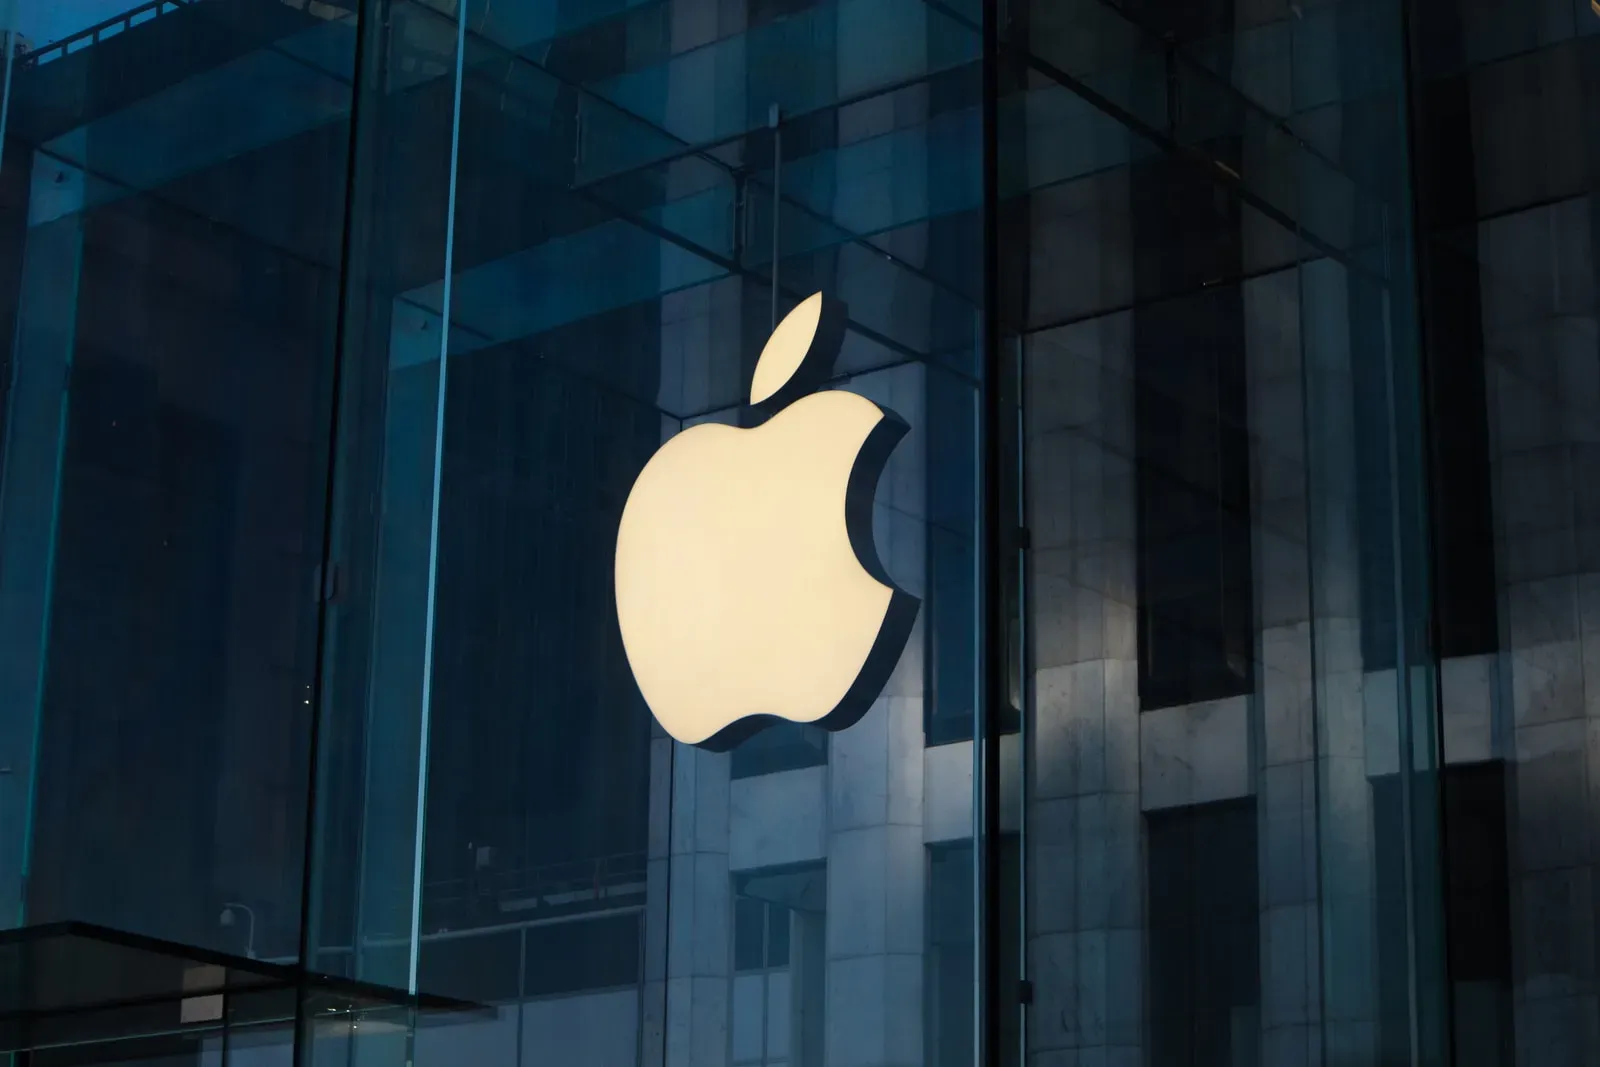 
											
											Apple kapitallashuvi 3 trillion dollarga yaqinlashdi
											
											